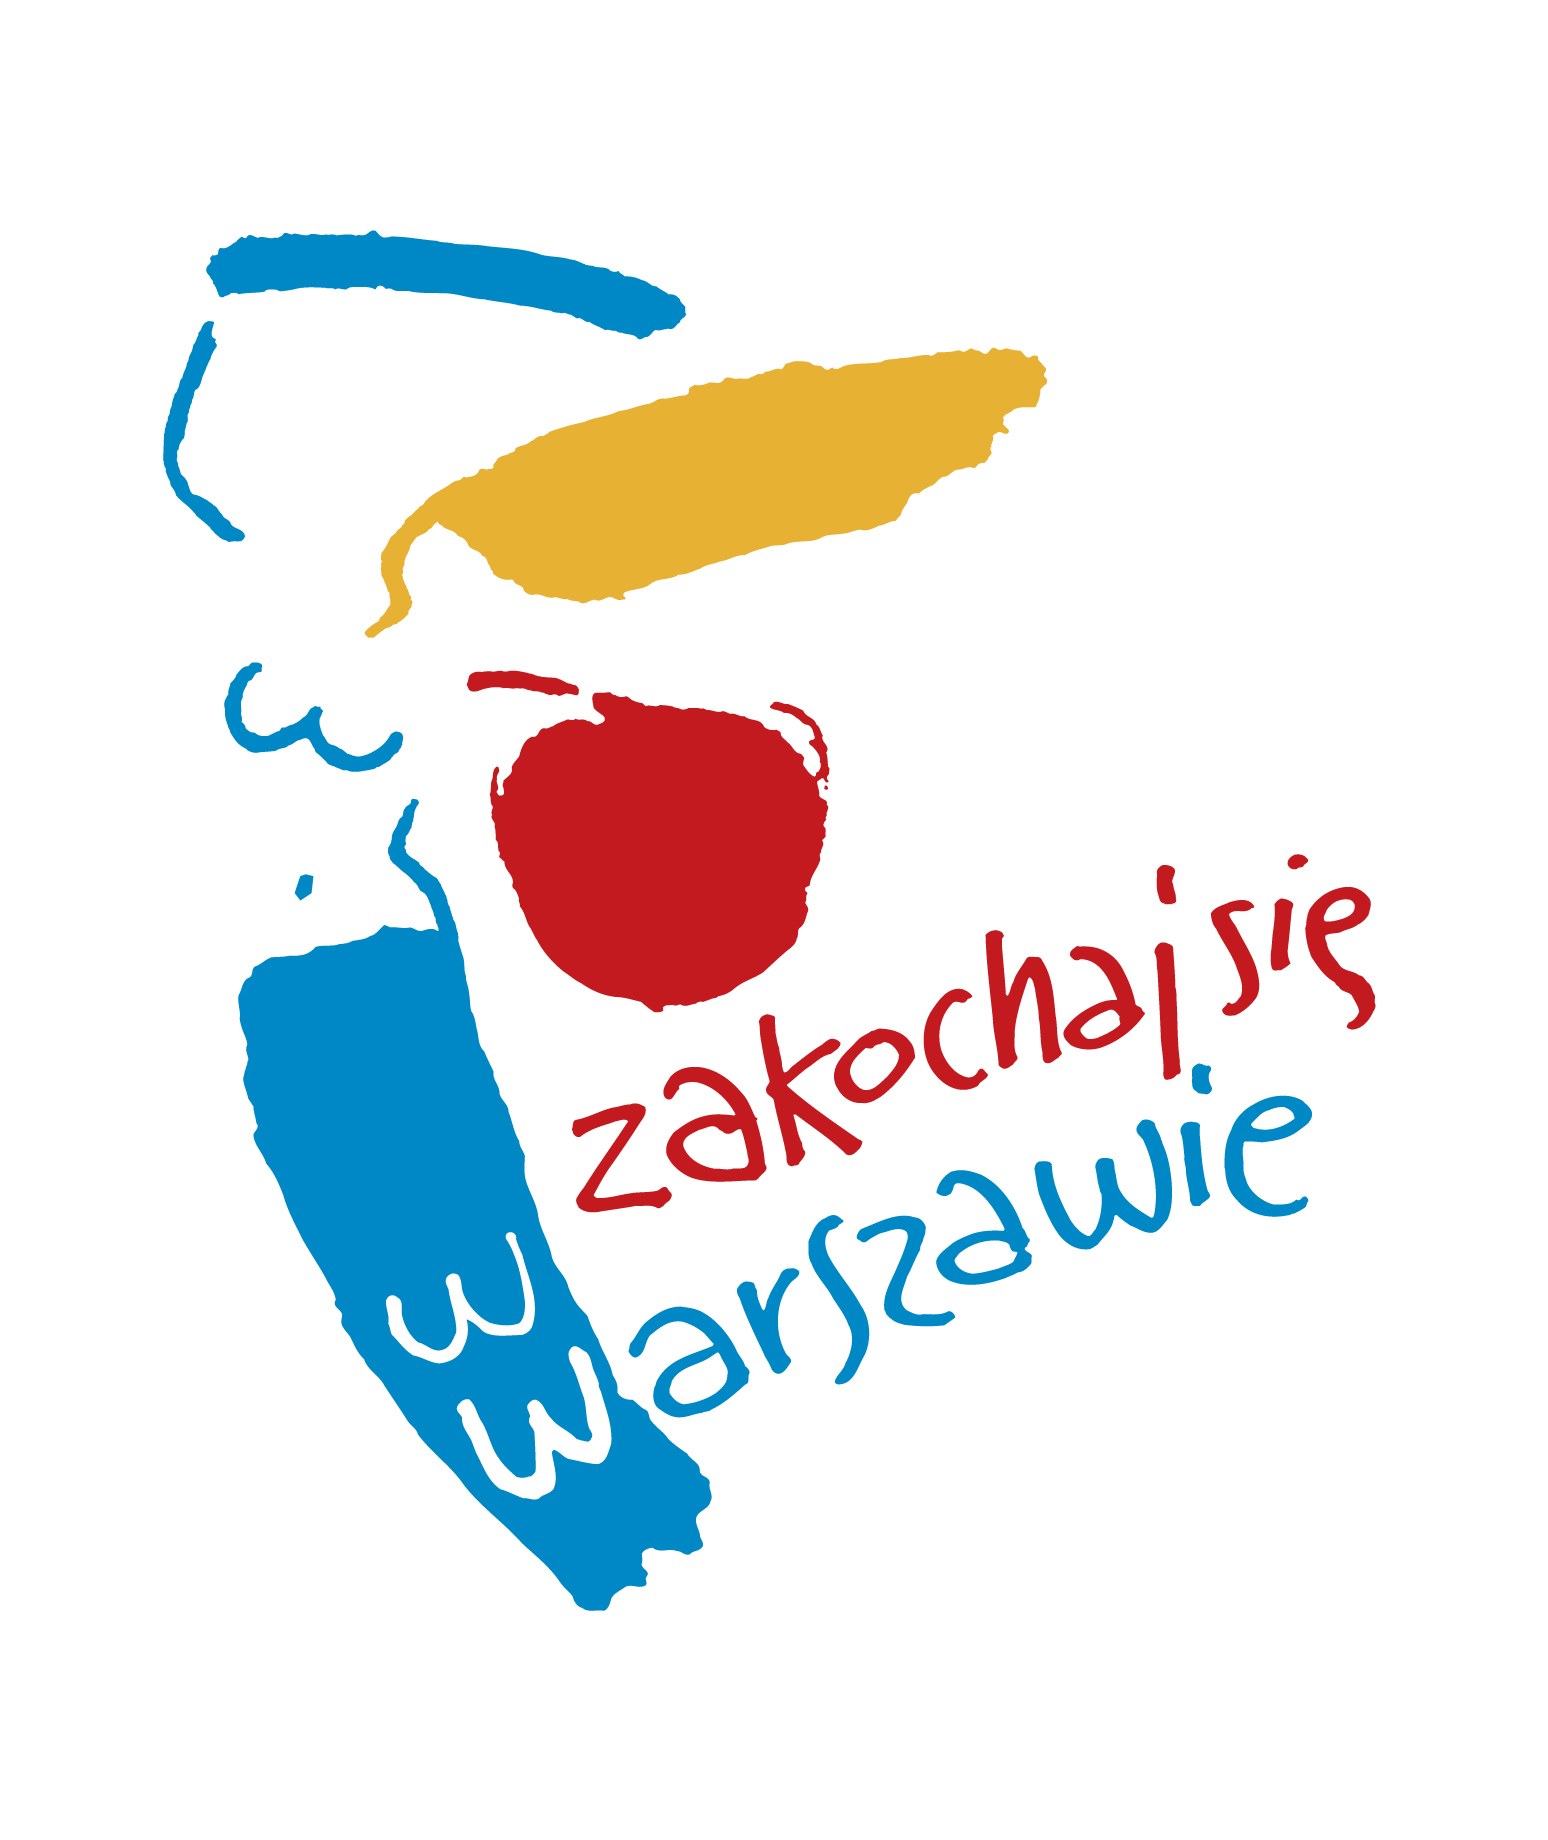 Zima w Mieście 2016 Szczegółowe wytyczne dla Biur i Dzielnic dotyczące realizacji Warszawskiego Programu Zima w